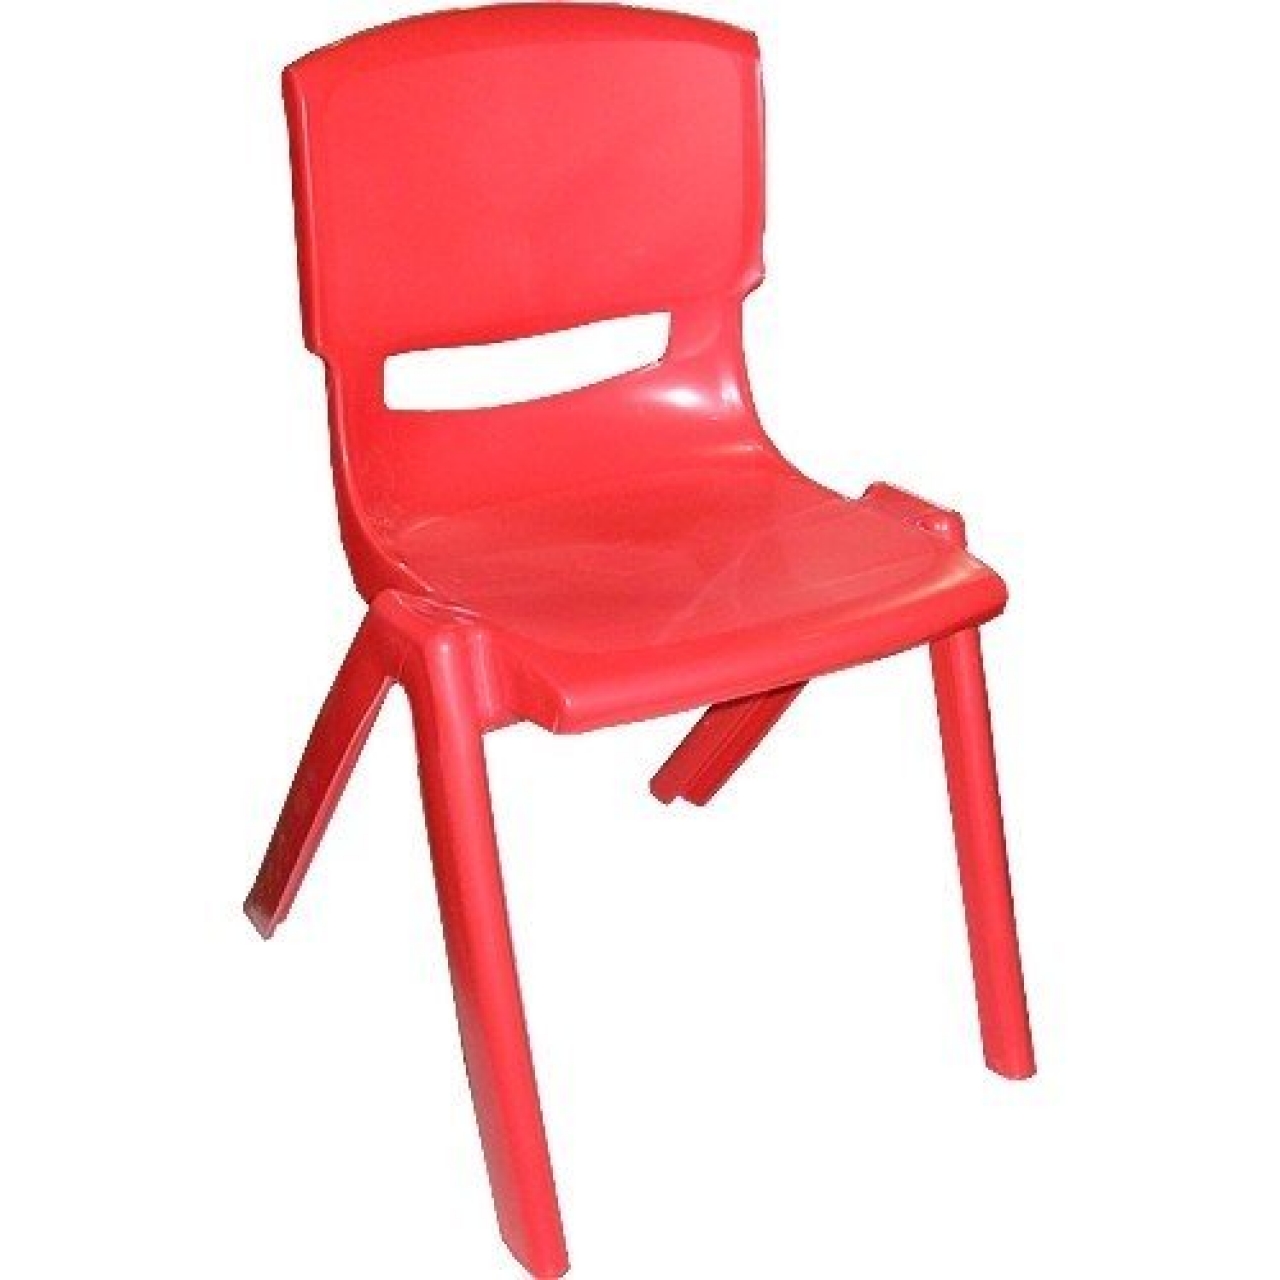 Kırılmaz Plastik Çocuk Sandalyesi-32 cm